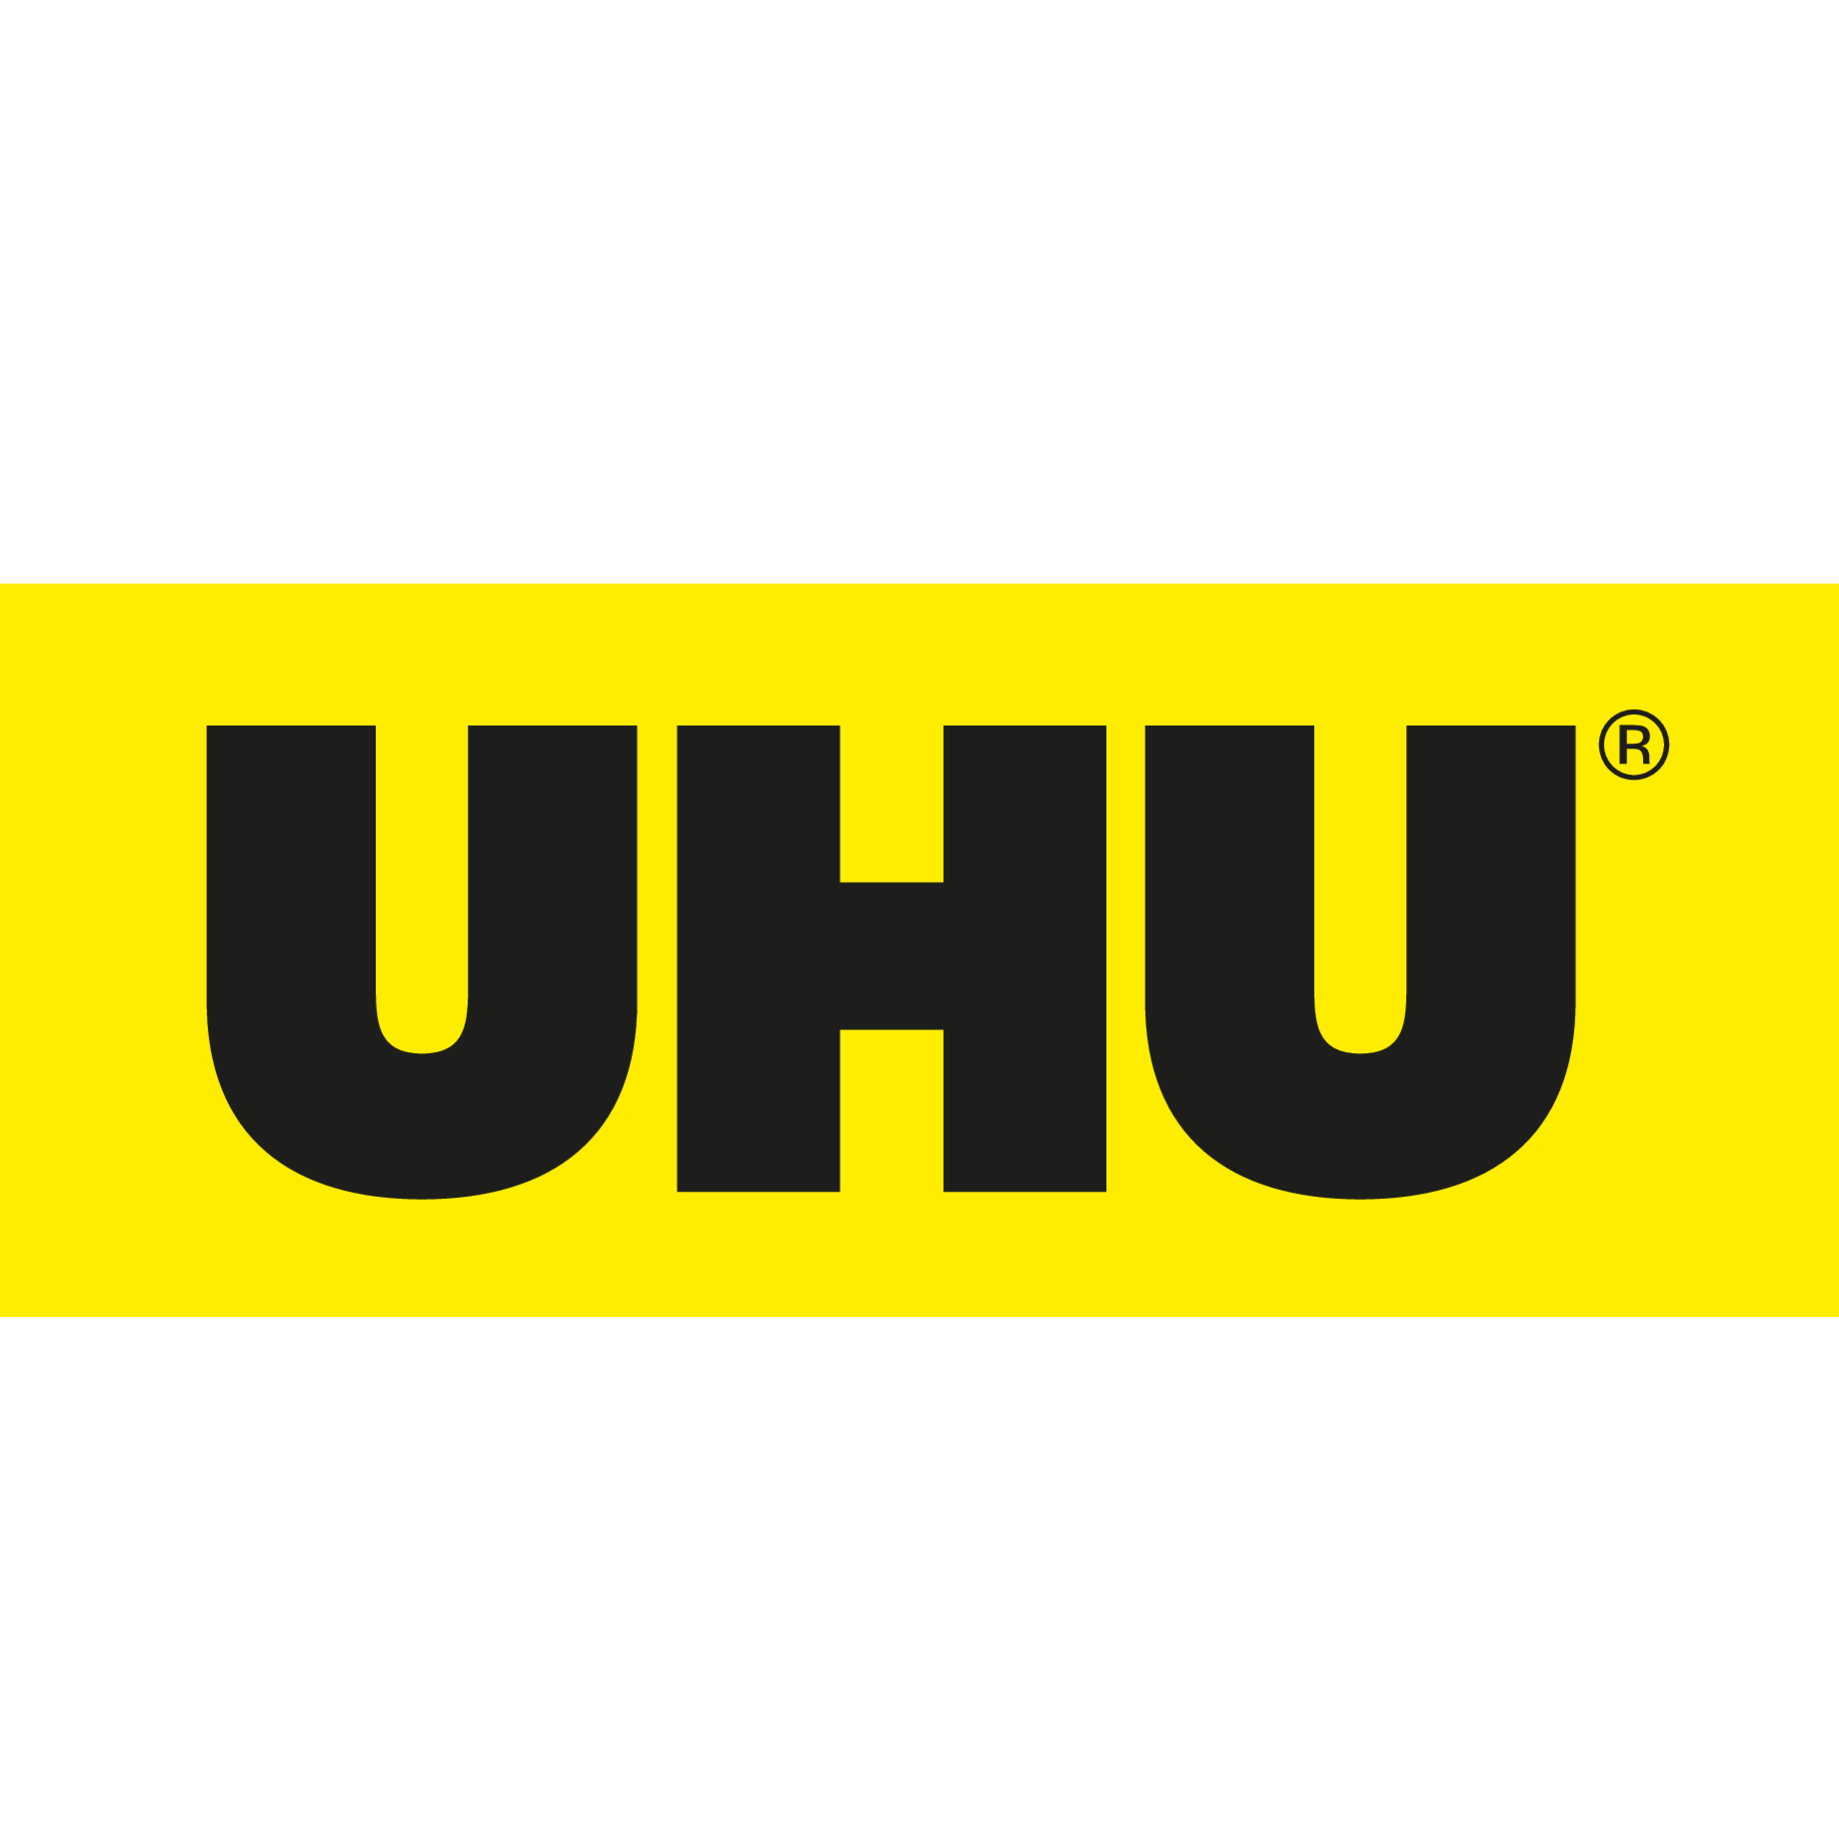 UHU®